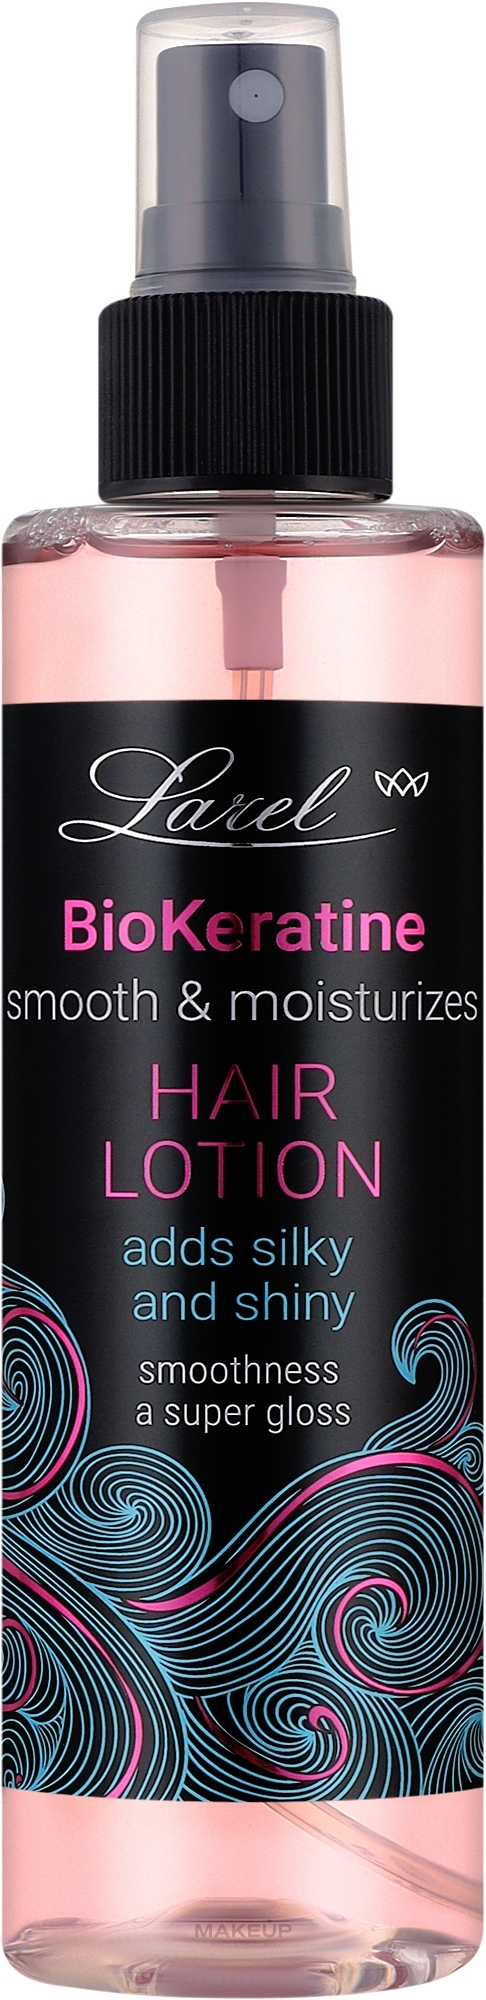 Лосьон для разглаживания волос - Larel Bio-Keratin Hair Lotion — фото 200ml